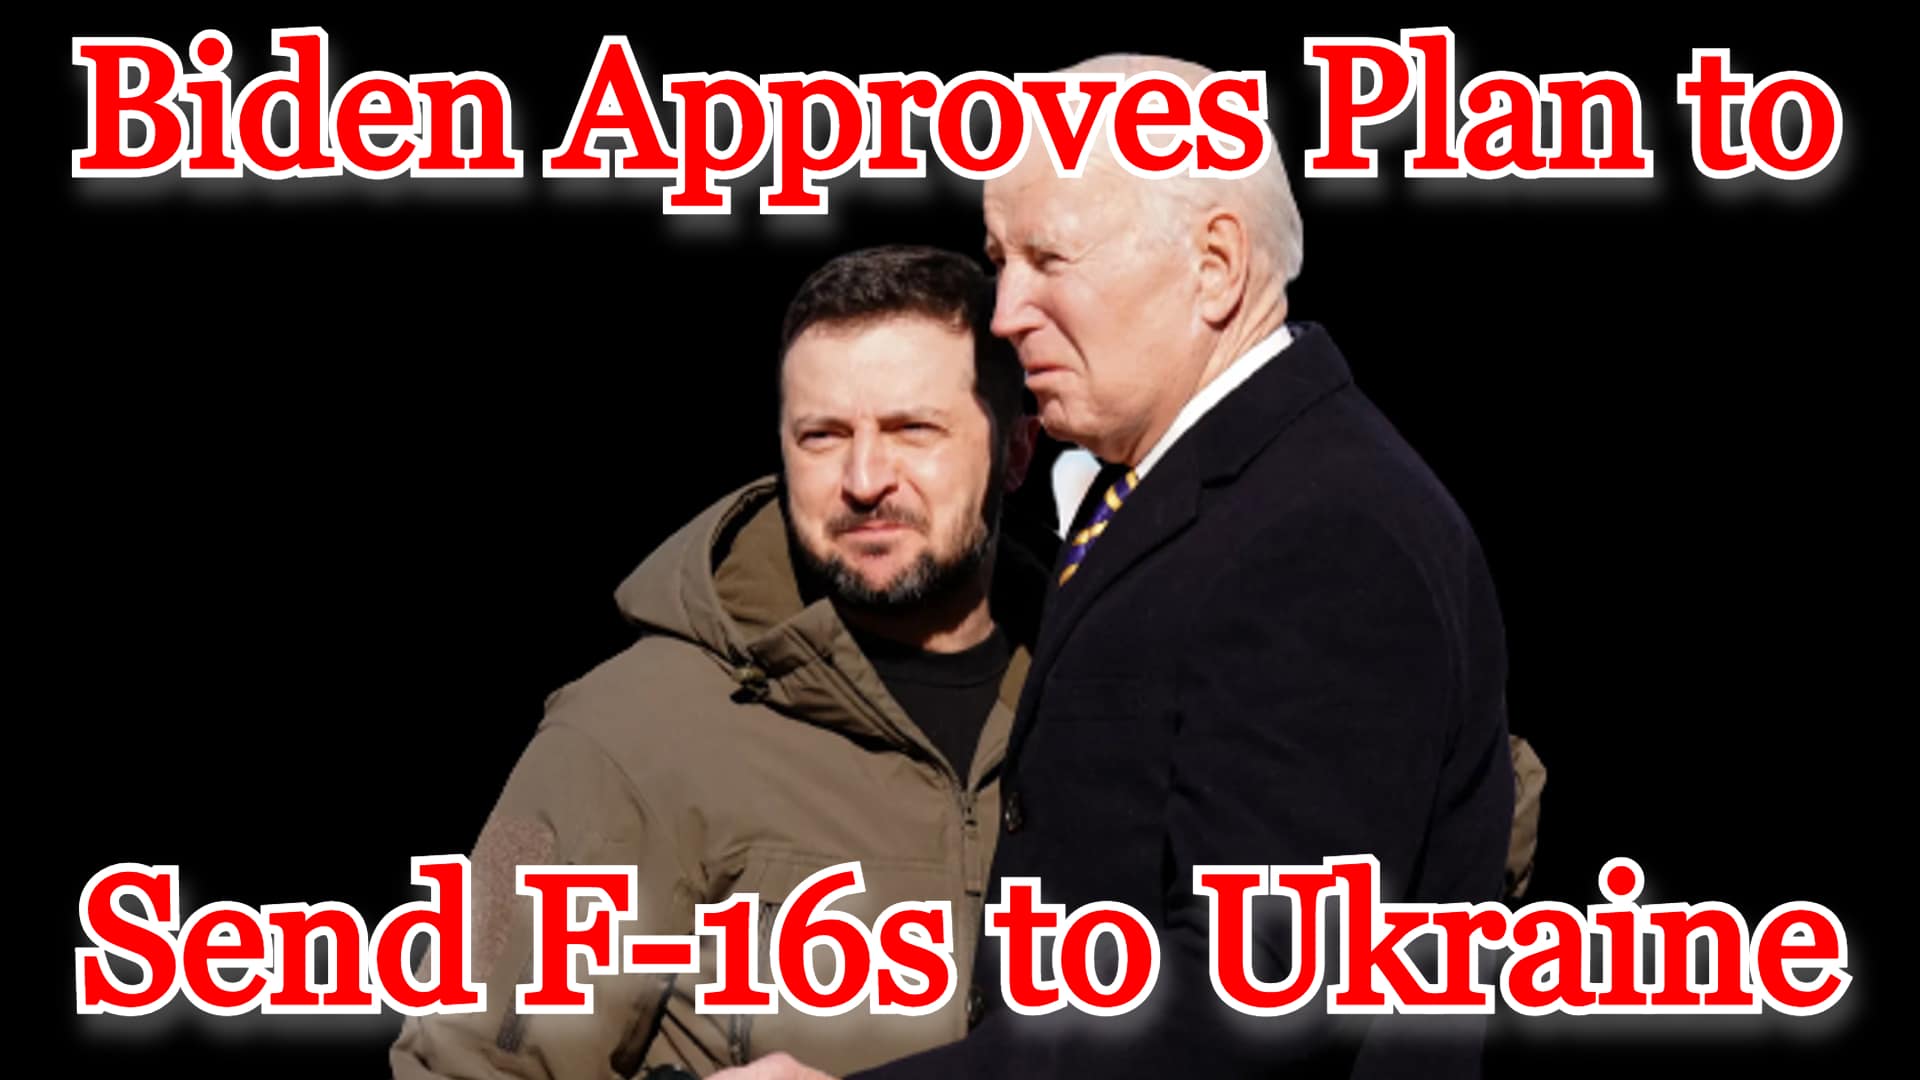 COI #424: Biden Approves Plan to Send F-16s to Ukraine